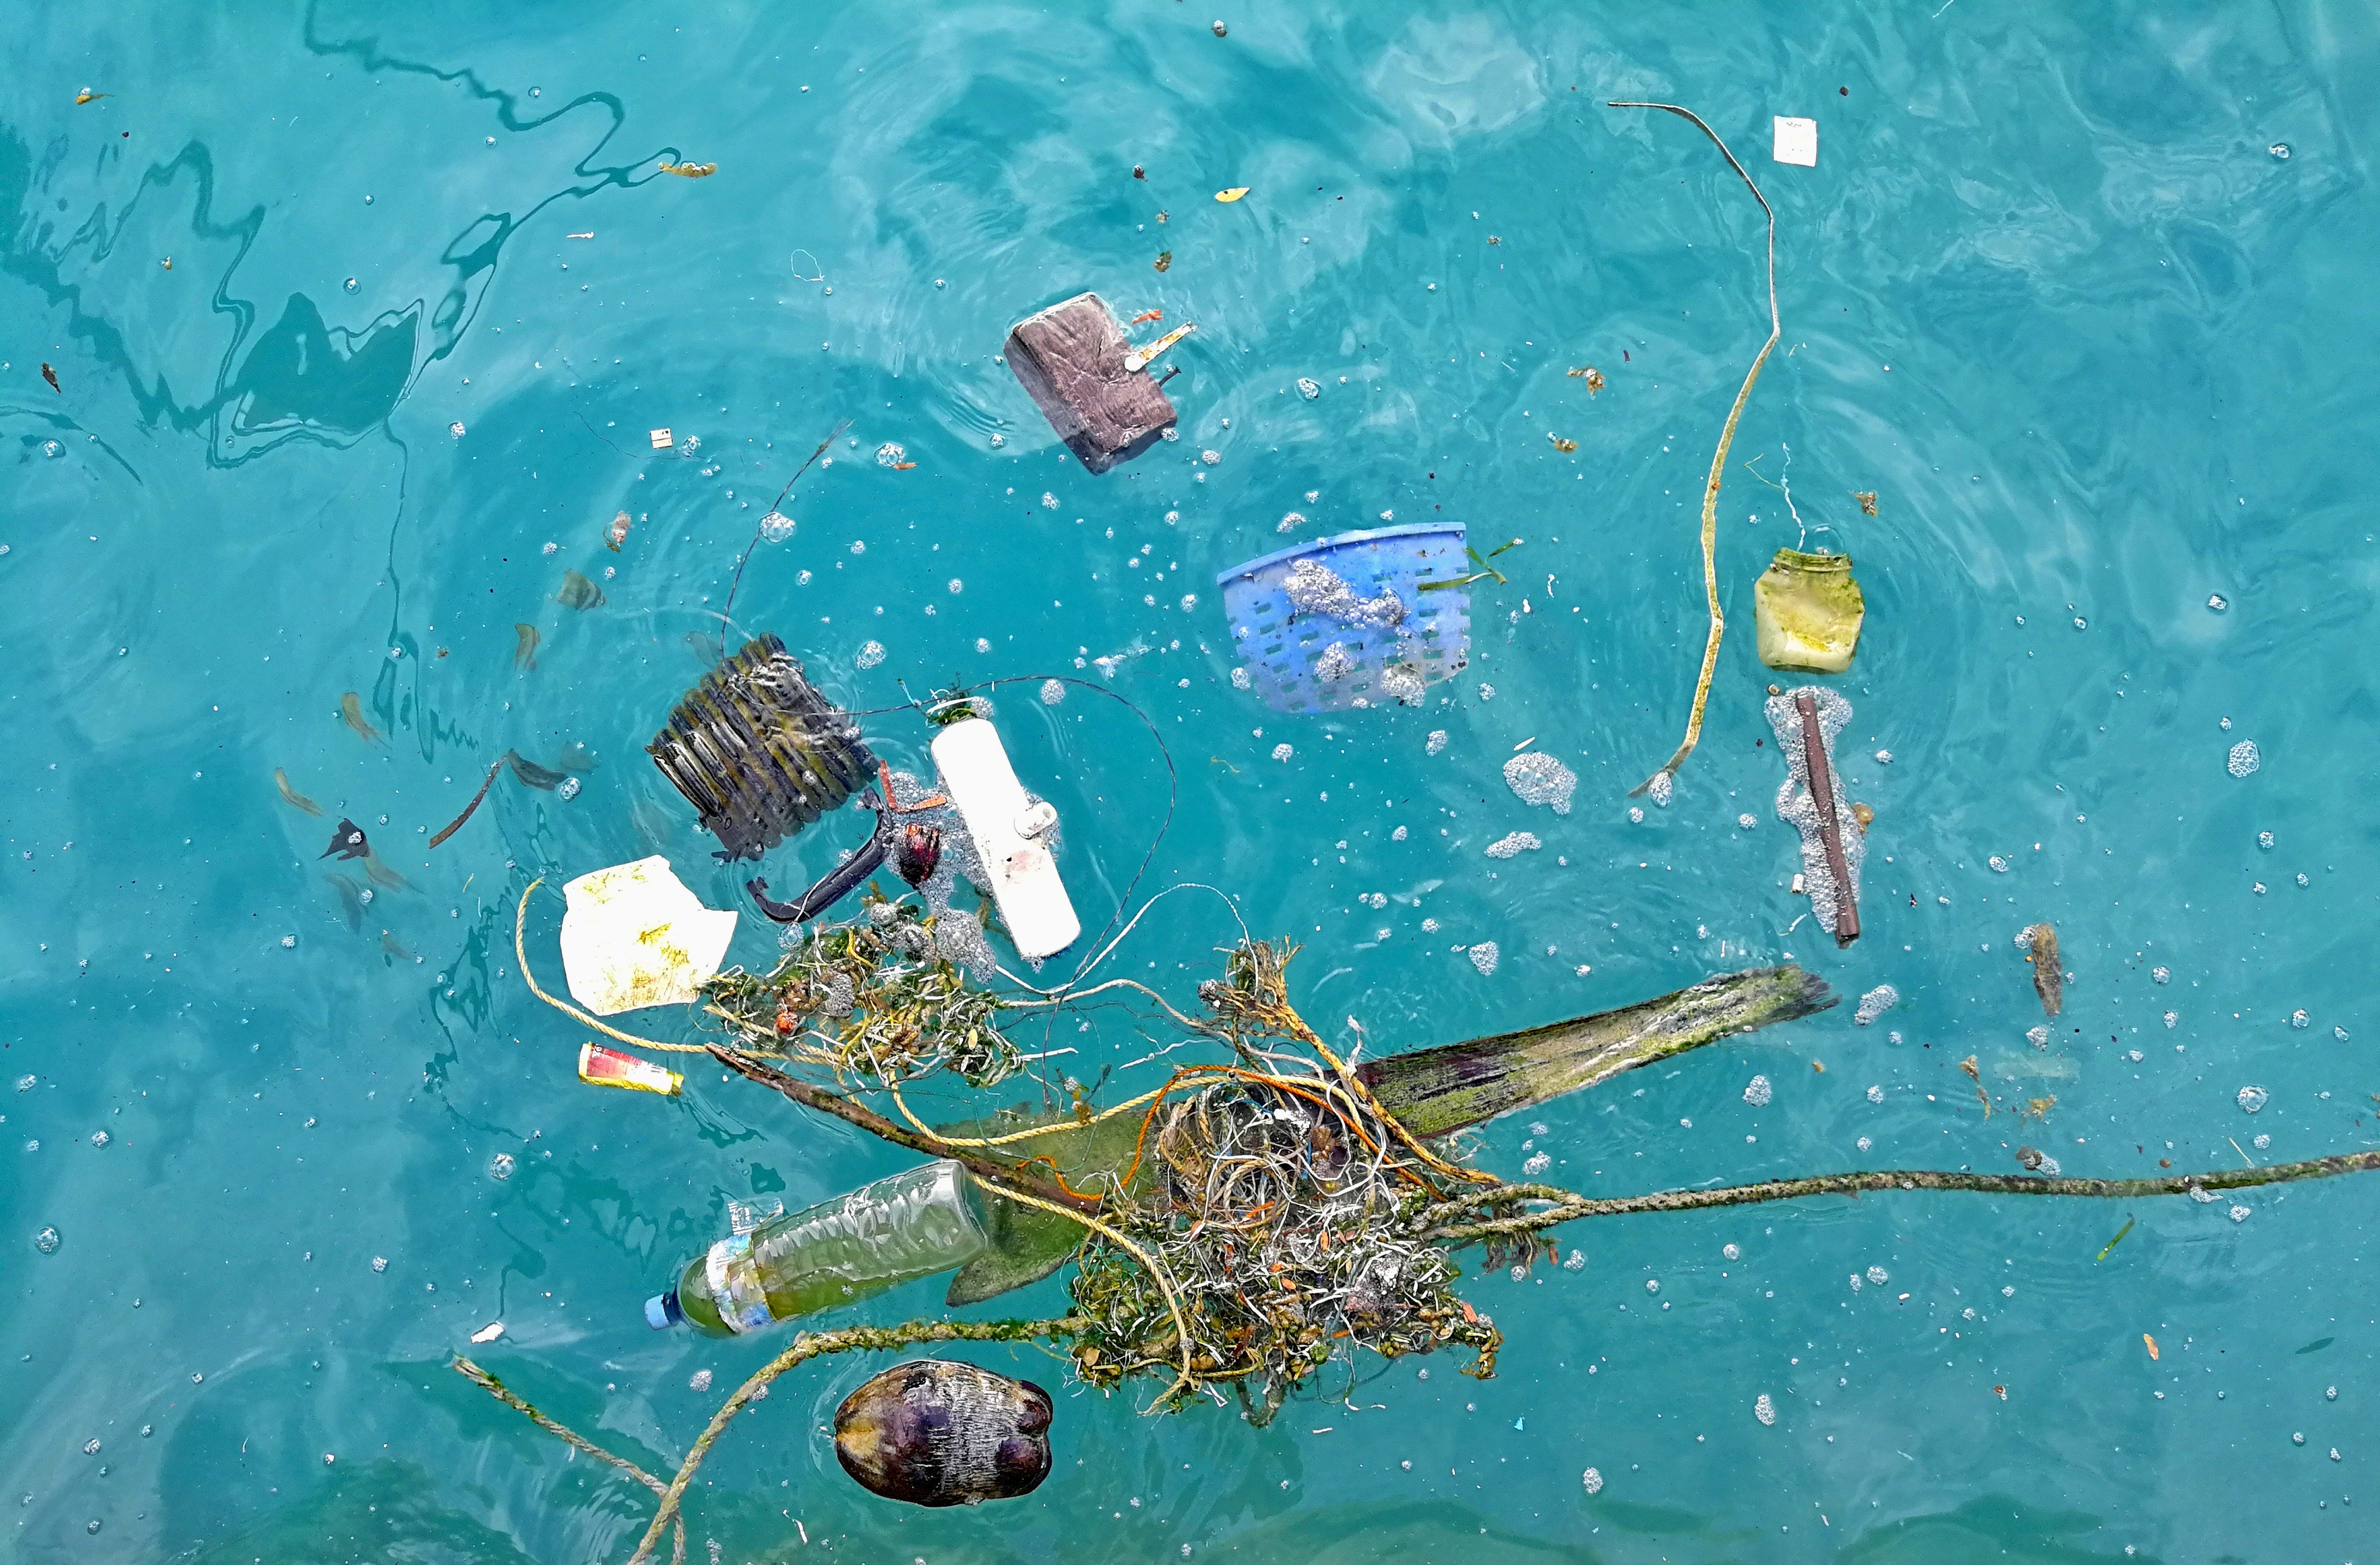 plastic in ocean animals